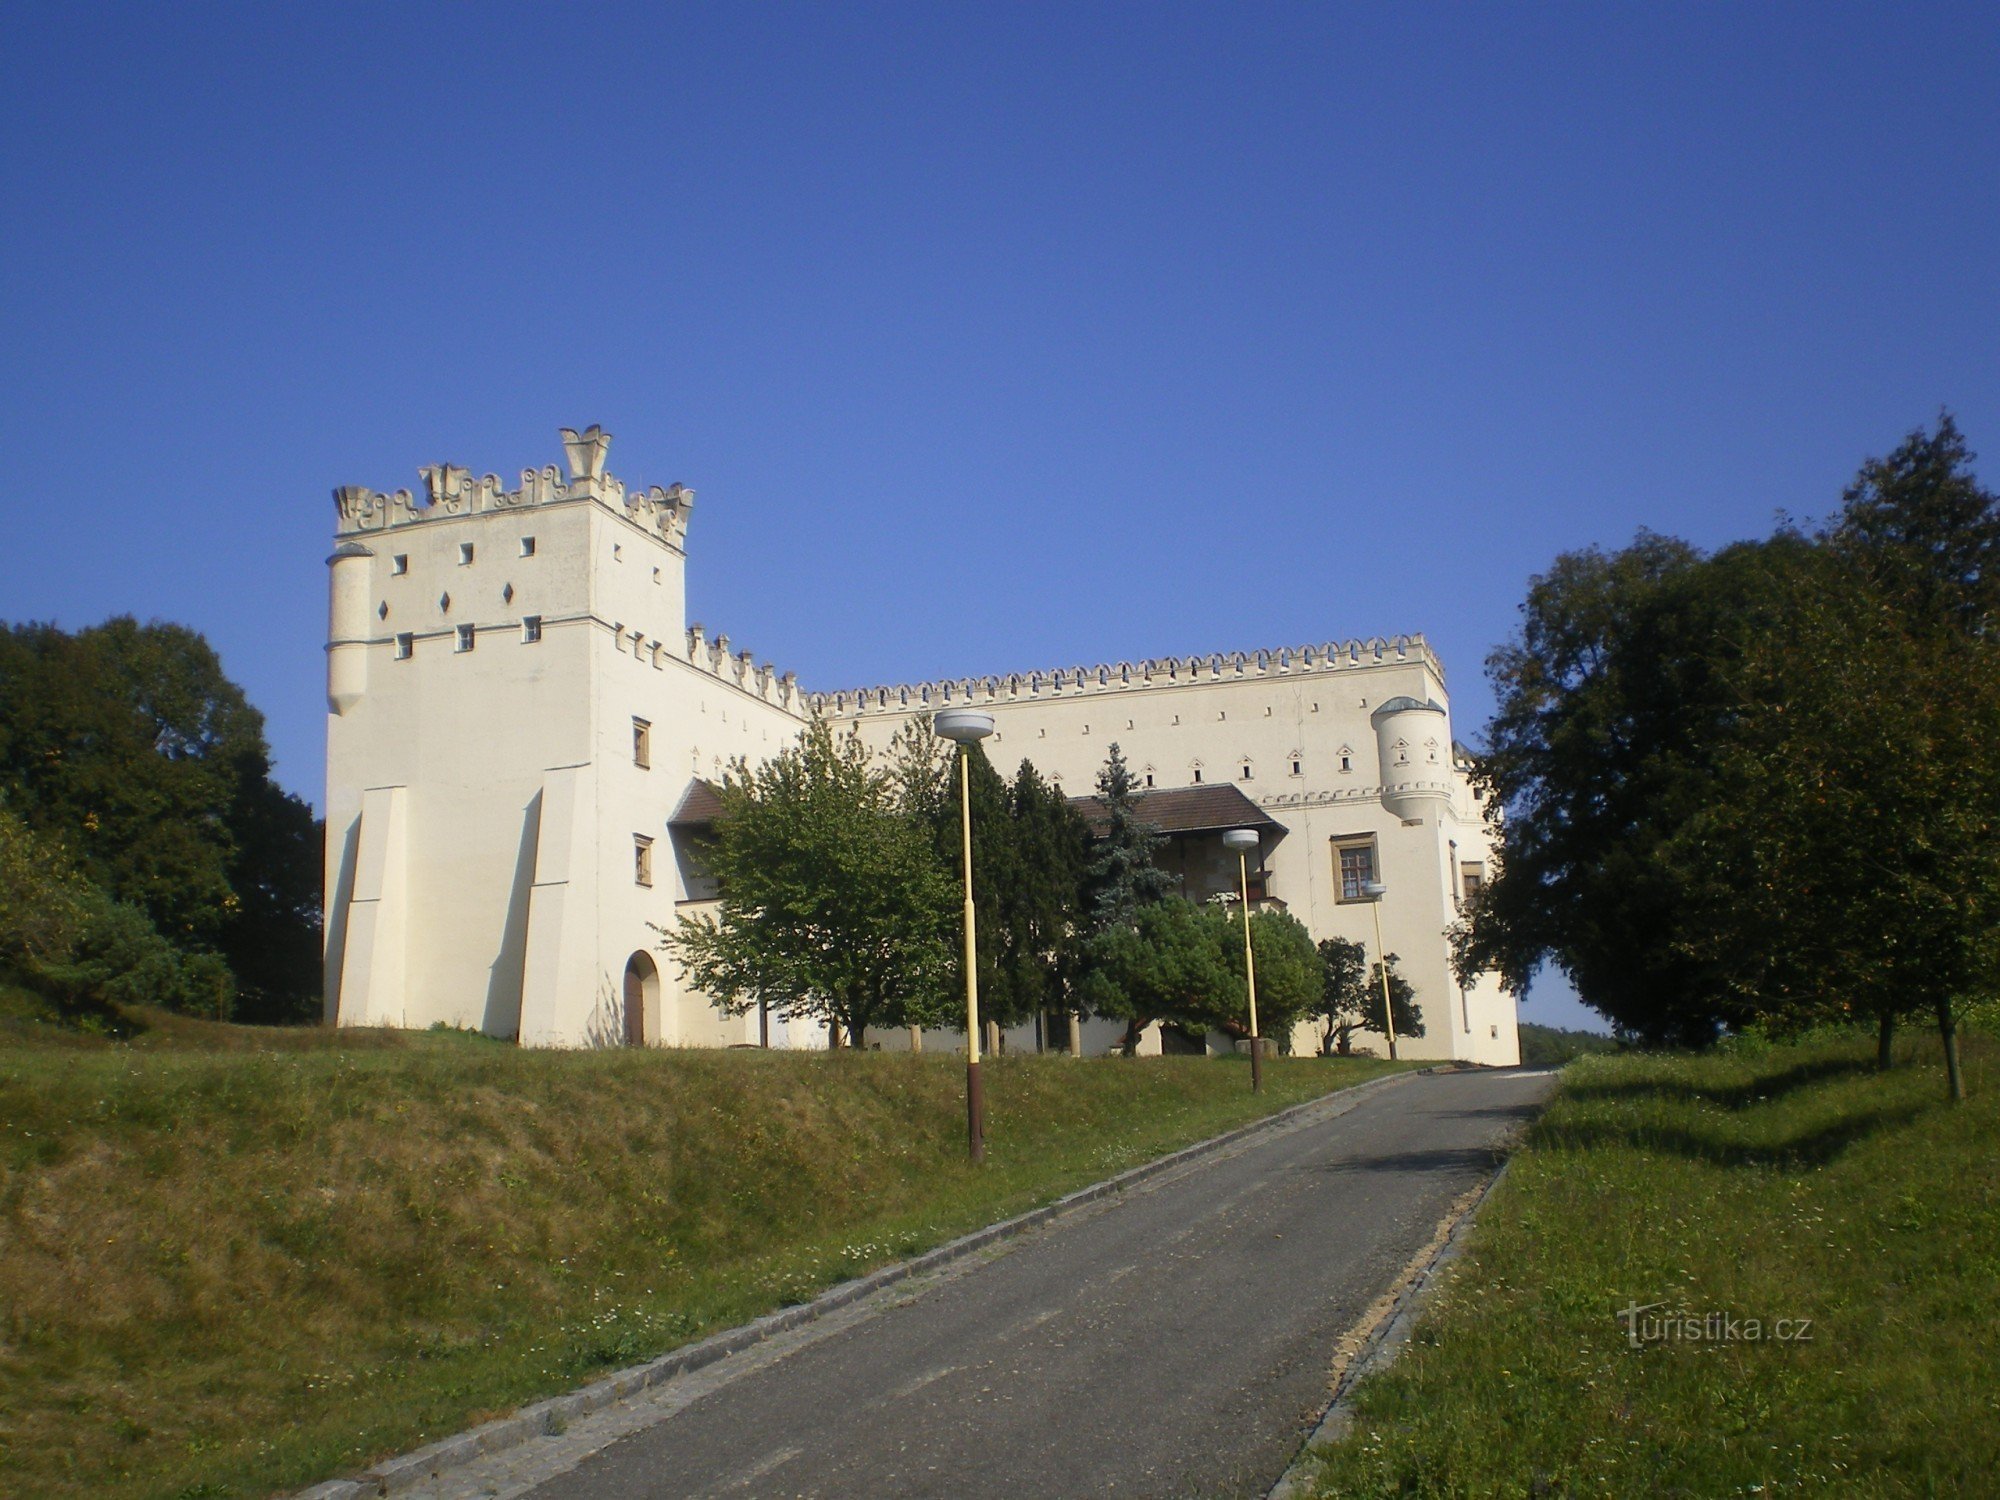 New Castles in Nesovice